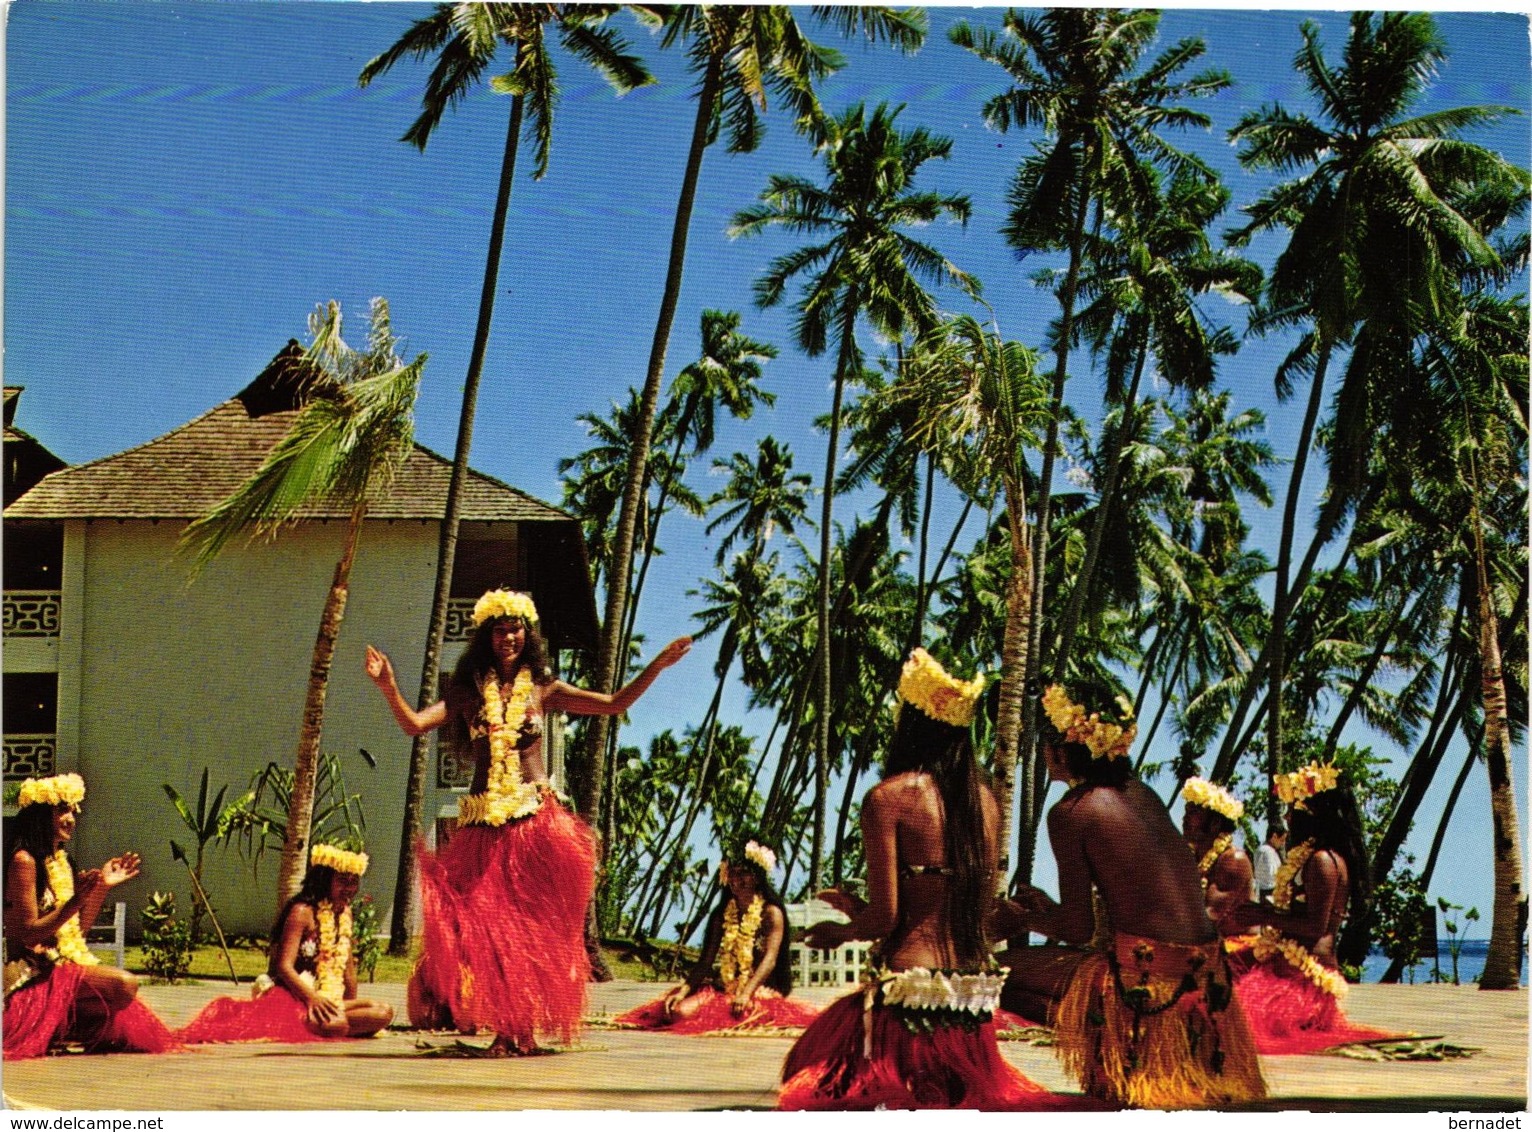 TAHITI .. GROUPE DE DANSE TAHITI NUI - Polynésie Française